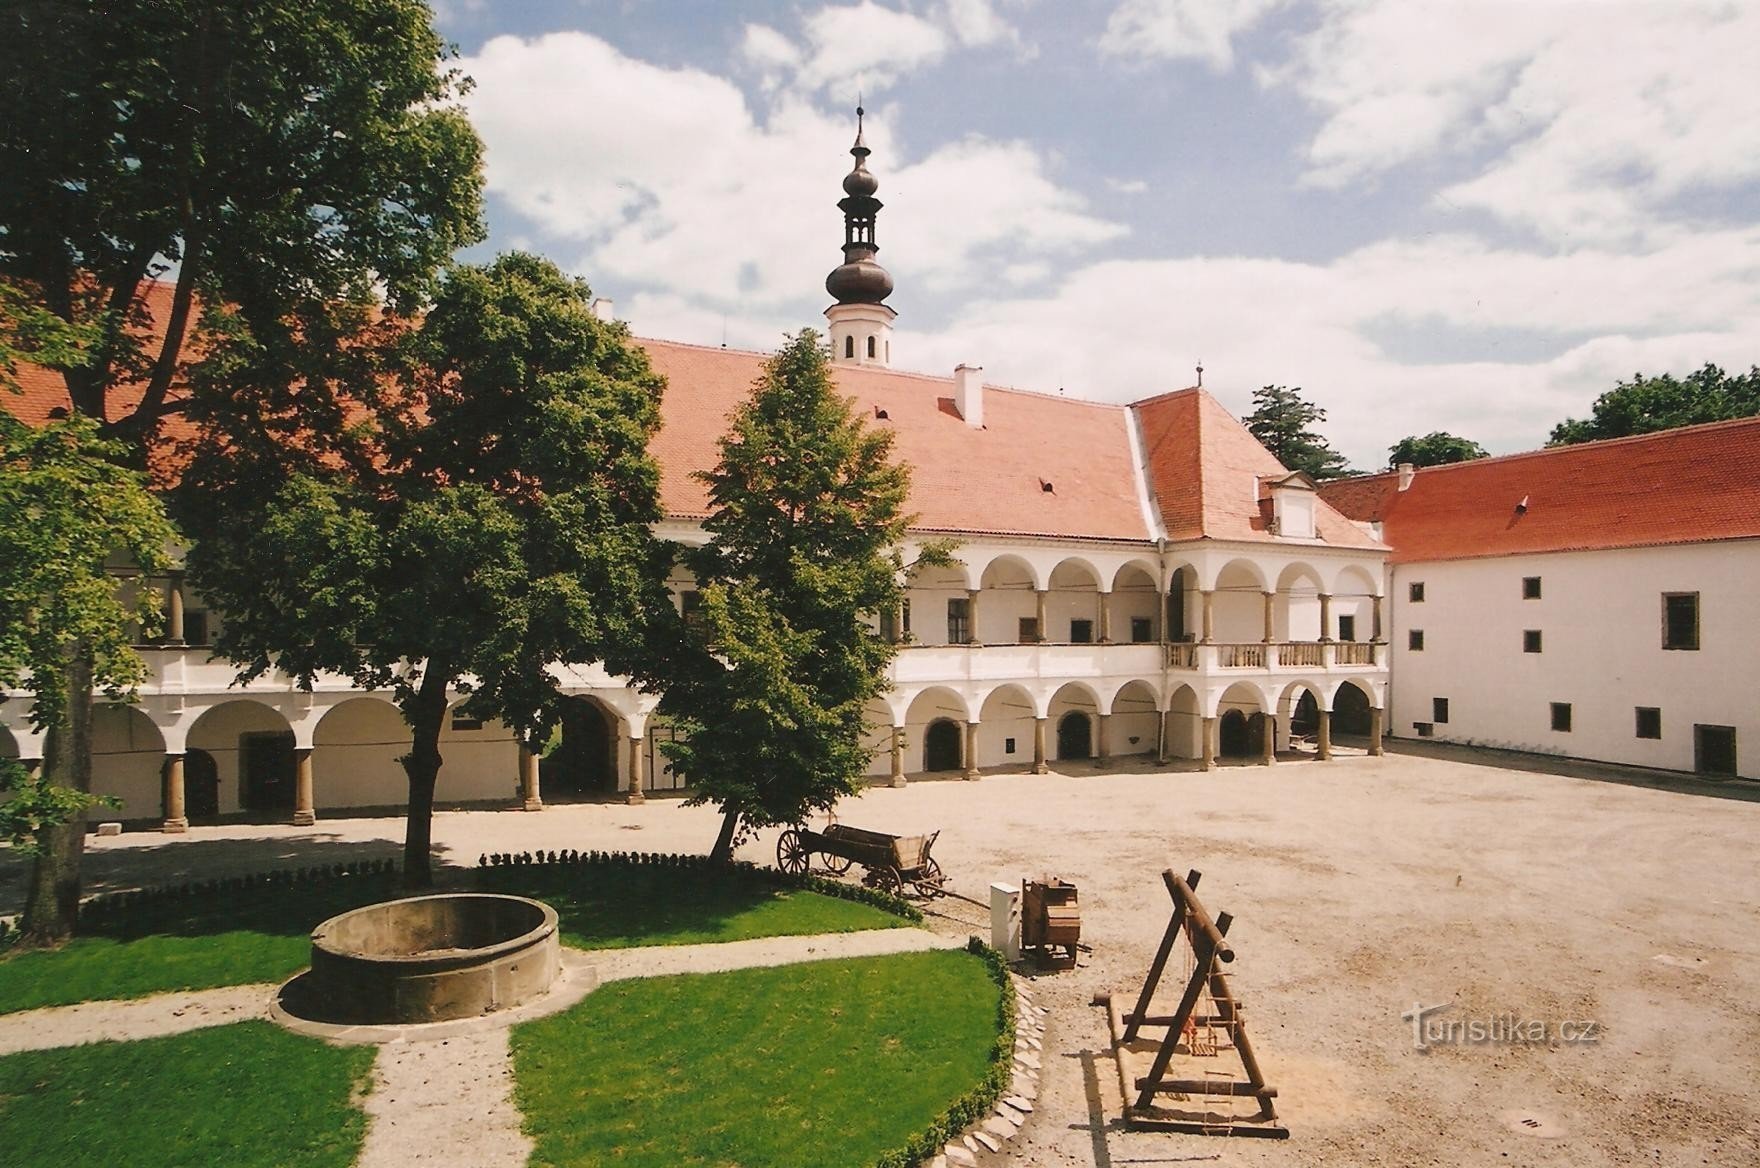 Oslavanský zámek - v pravé části hasičské muzeum